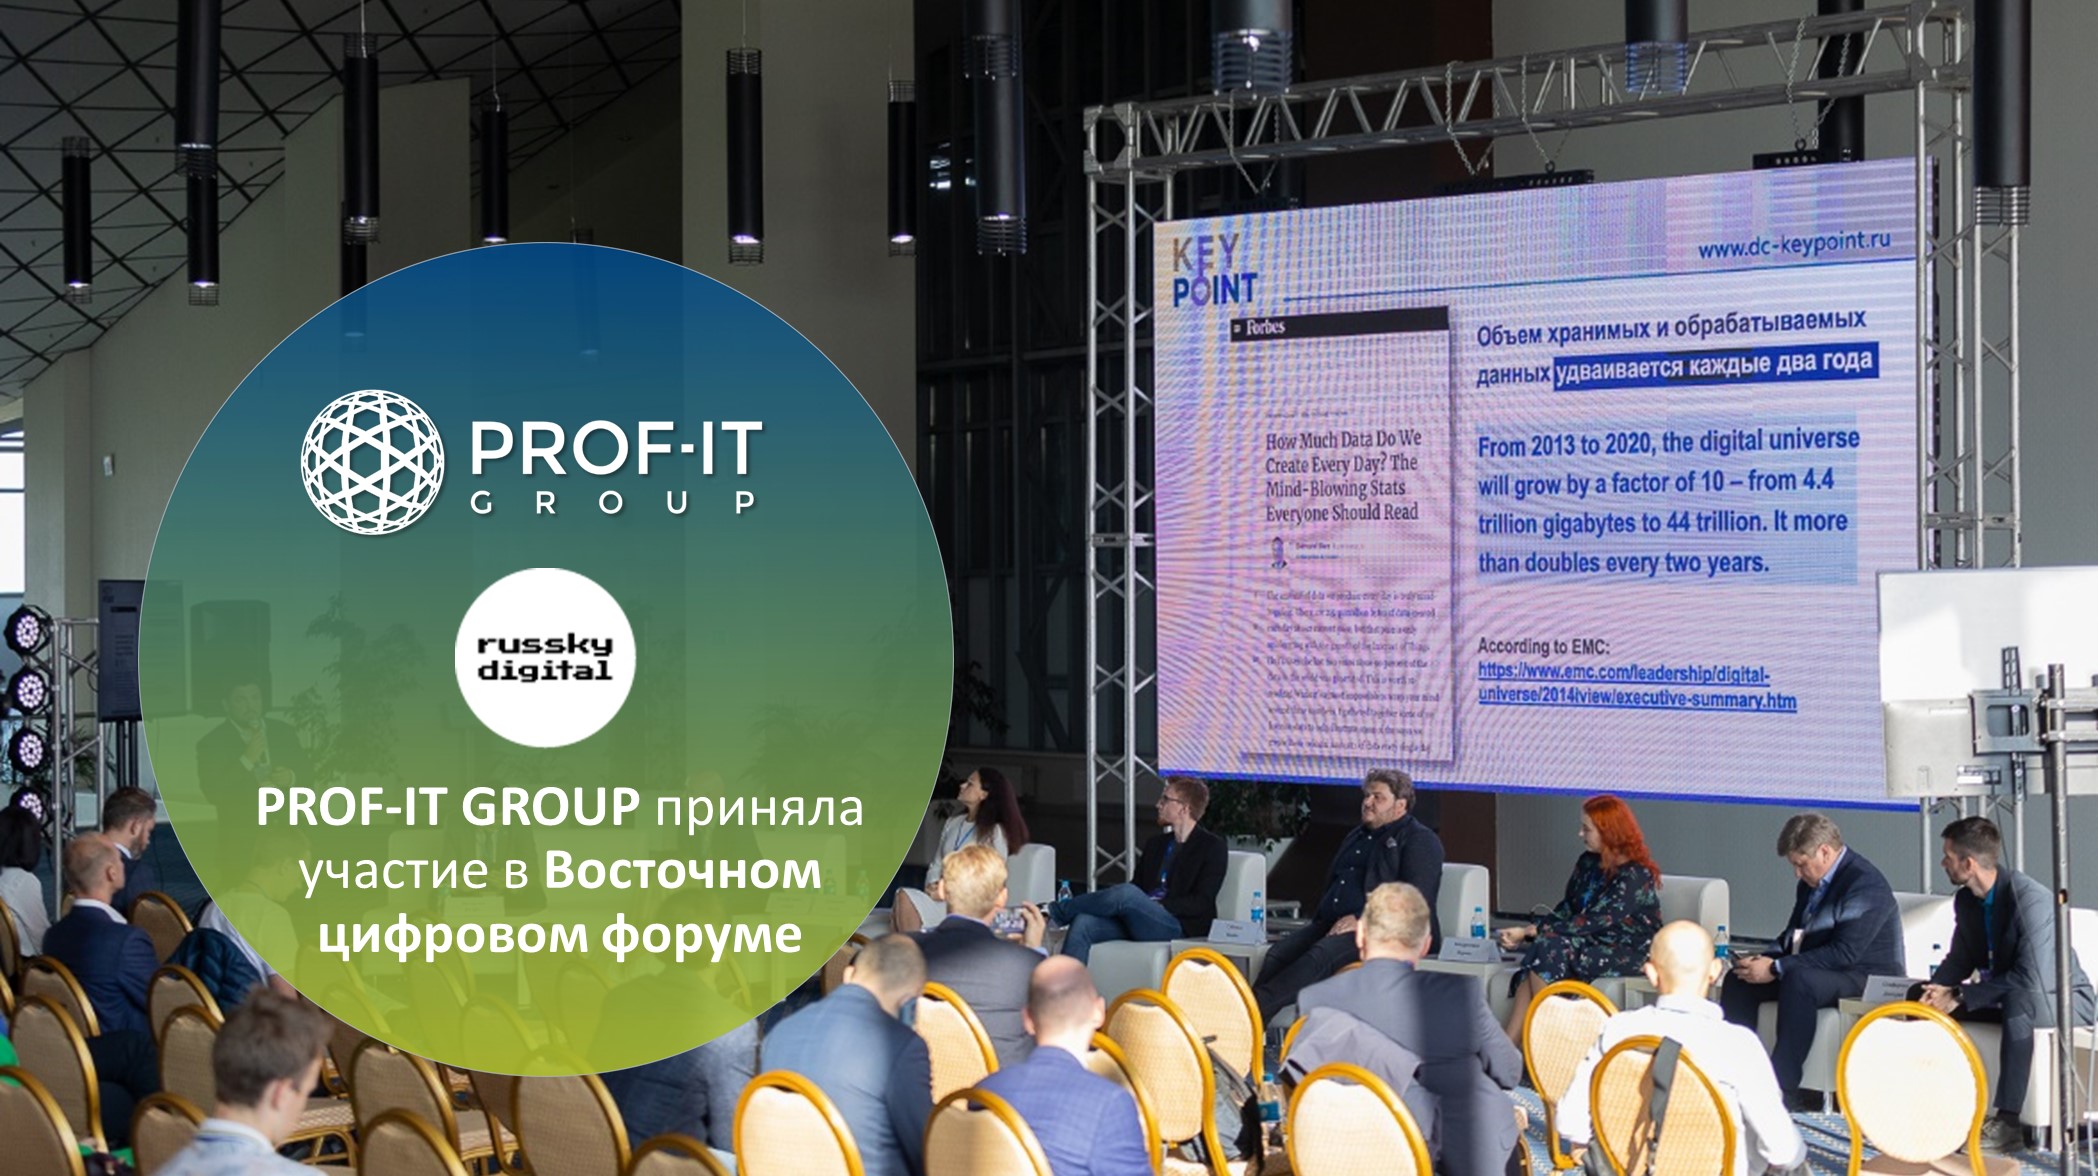 PROF-IT GROUP приняла участие в Восточном цифровом форуме